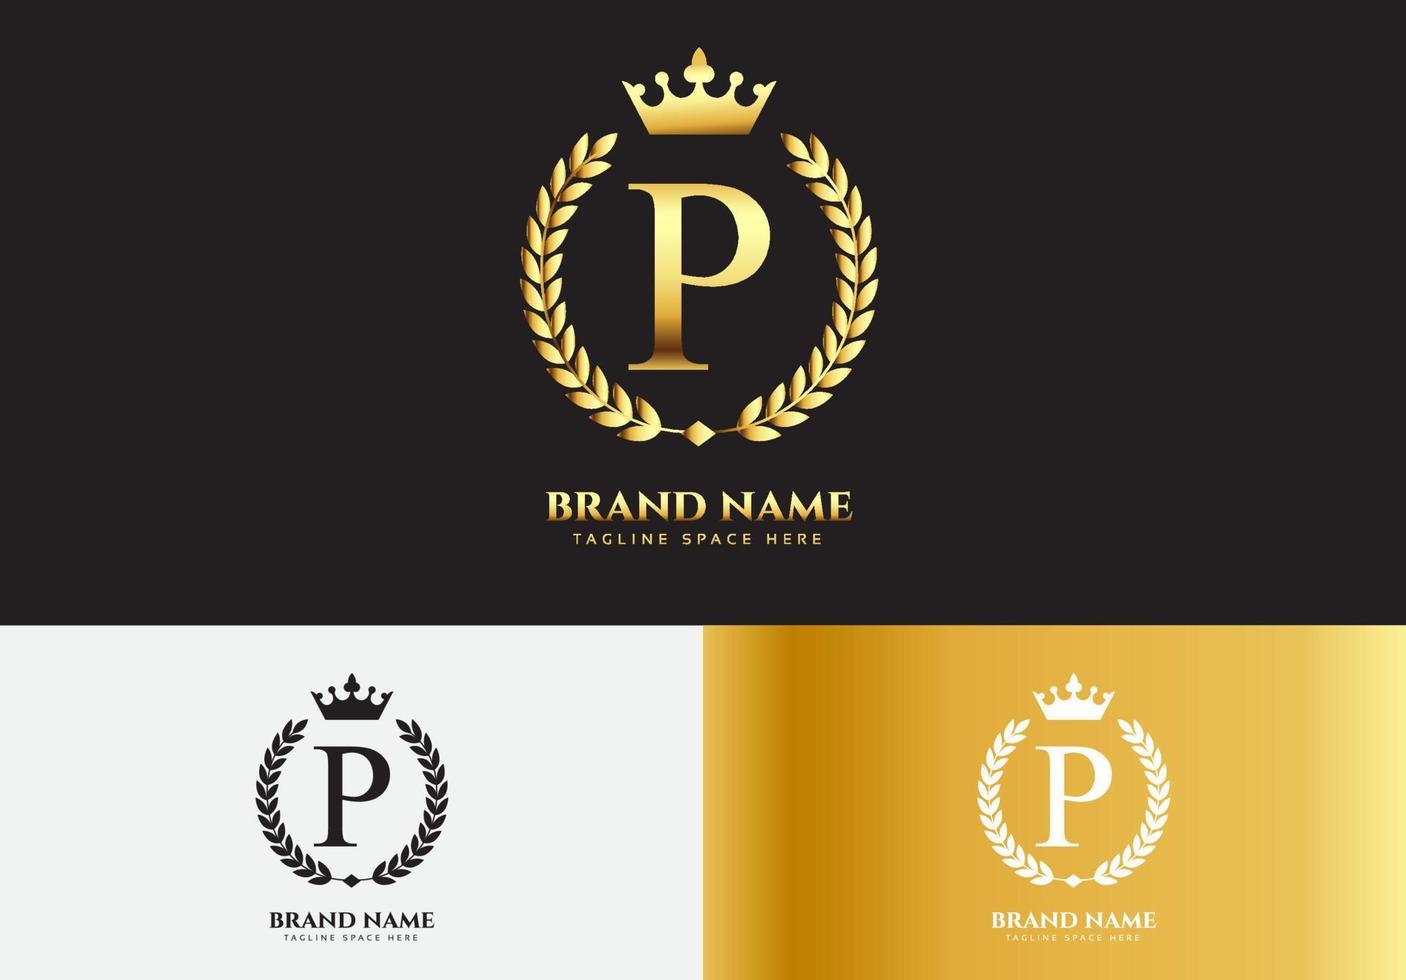 conceito do logotipo da coroa de luxo ouro letra p vetor